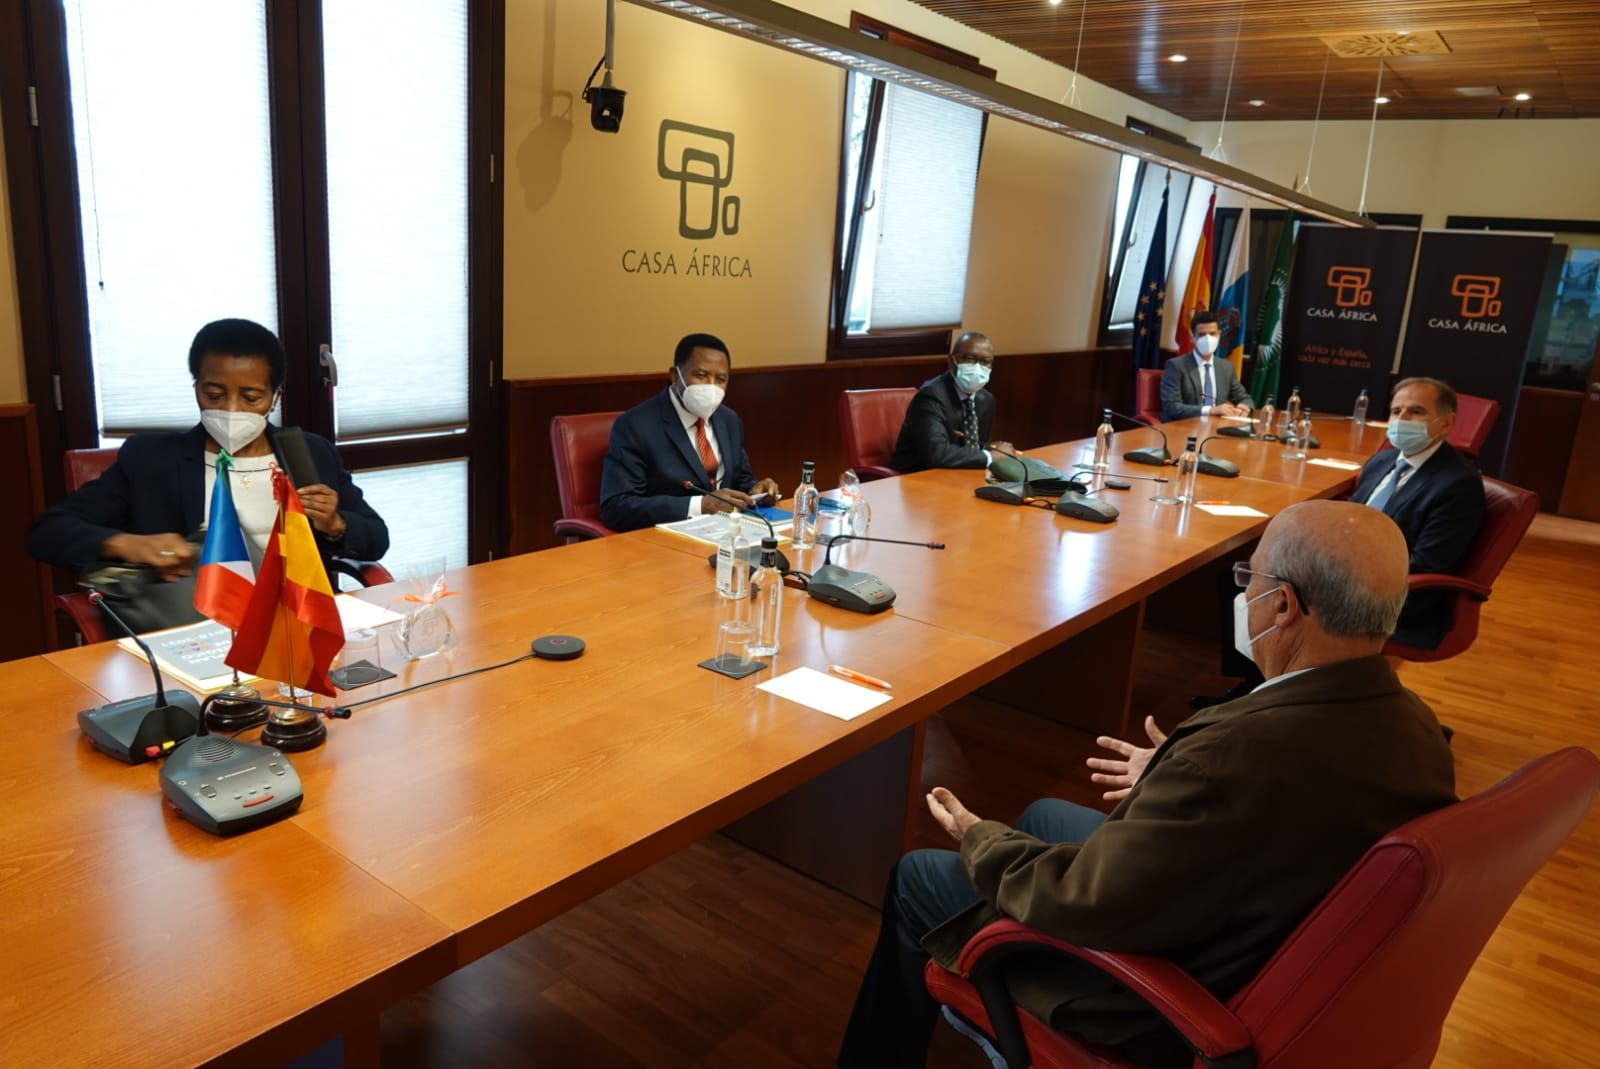 El embajador de Guinea Ecuatorial en España visita Casa África. Aquí la delegación en la Sala del Consejo de Casa África, donde conocieron los programas de la institución.